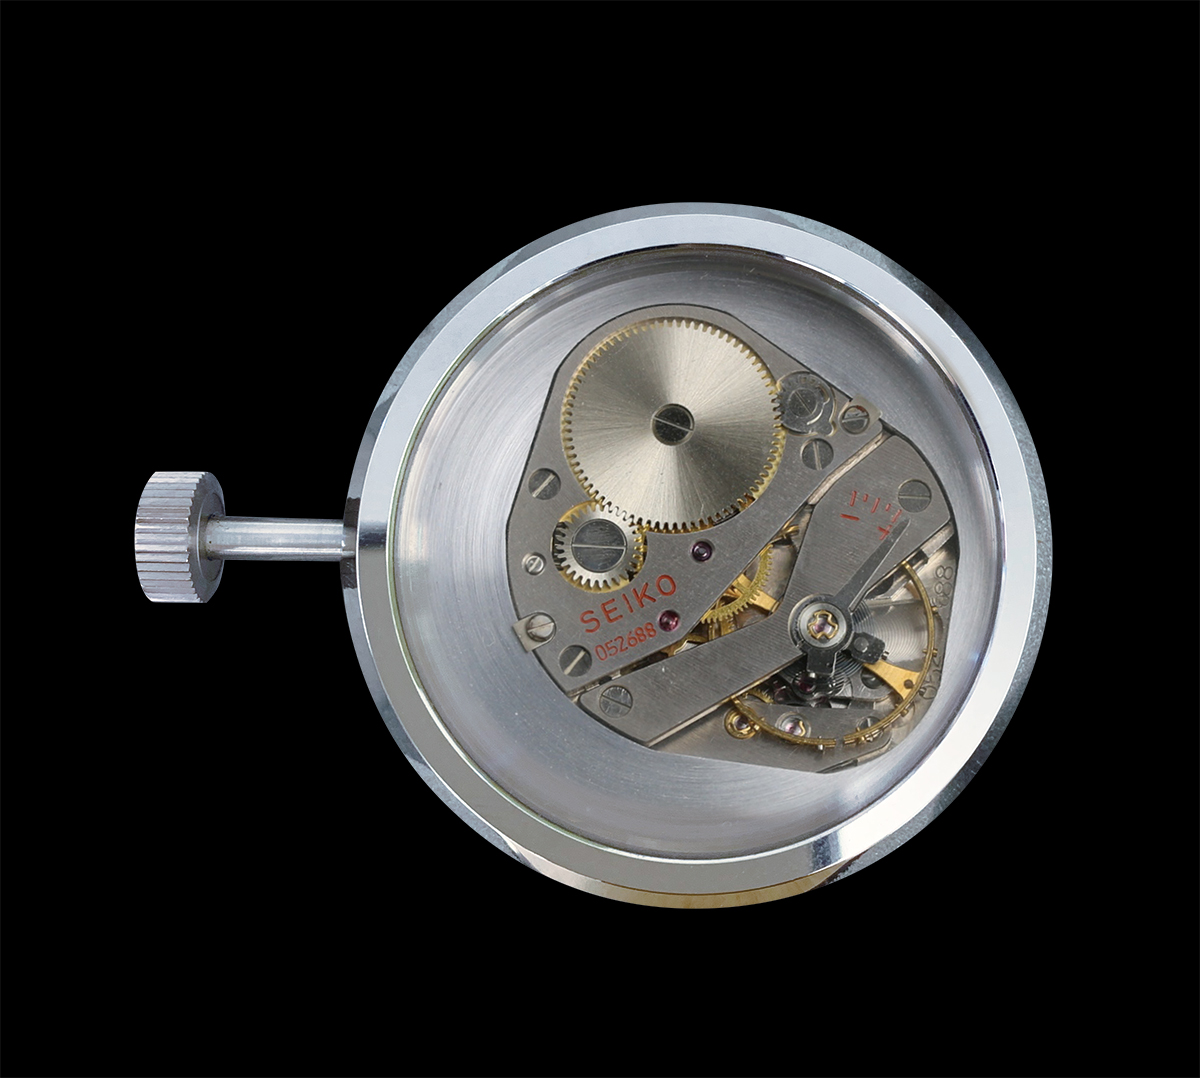 時計の精度を競うスイスのヌーシャテル天文台コンクールで上位入賞